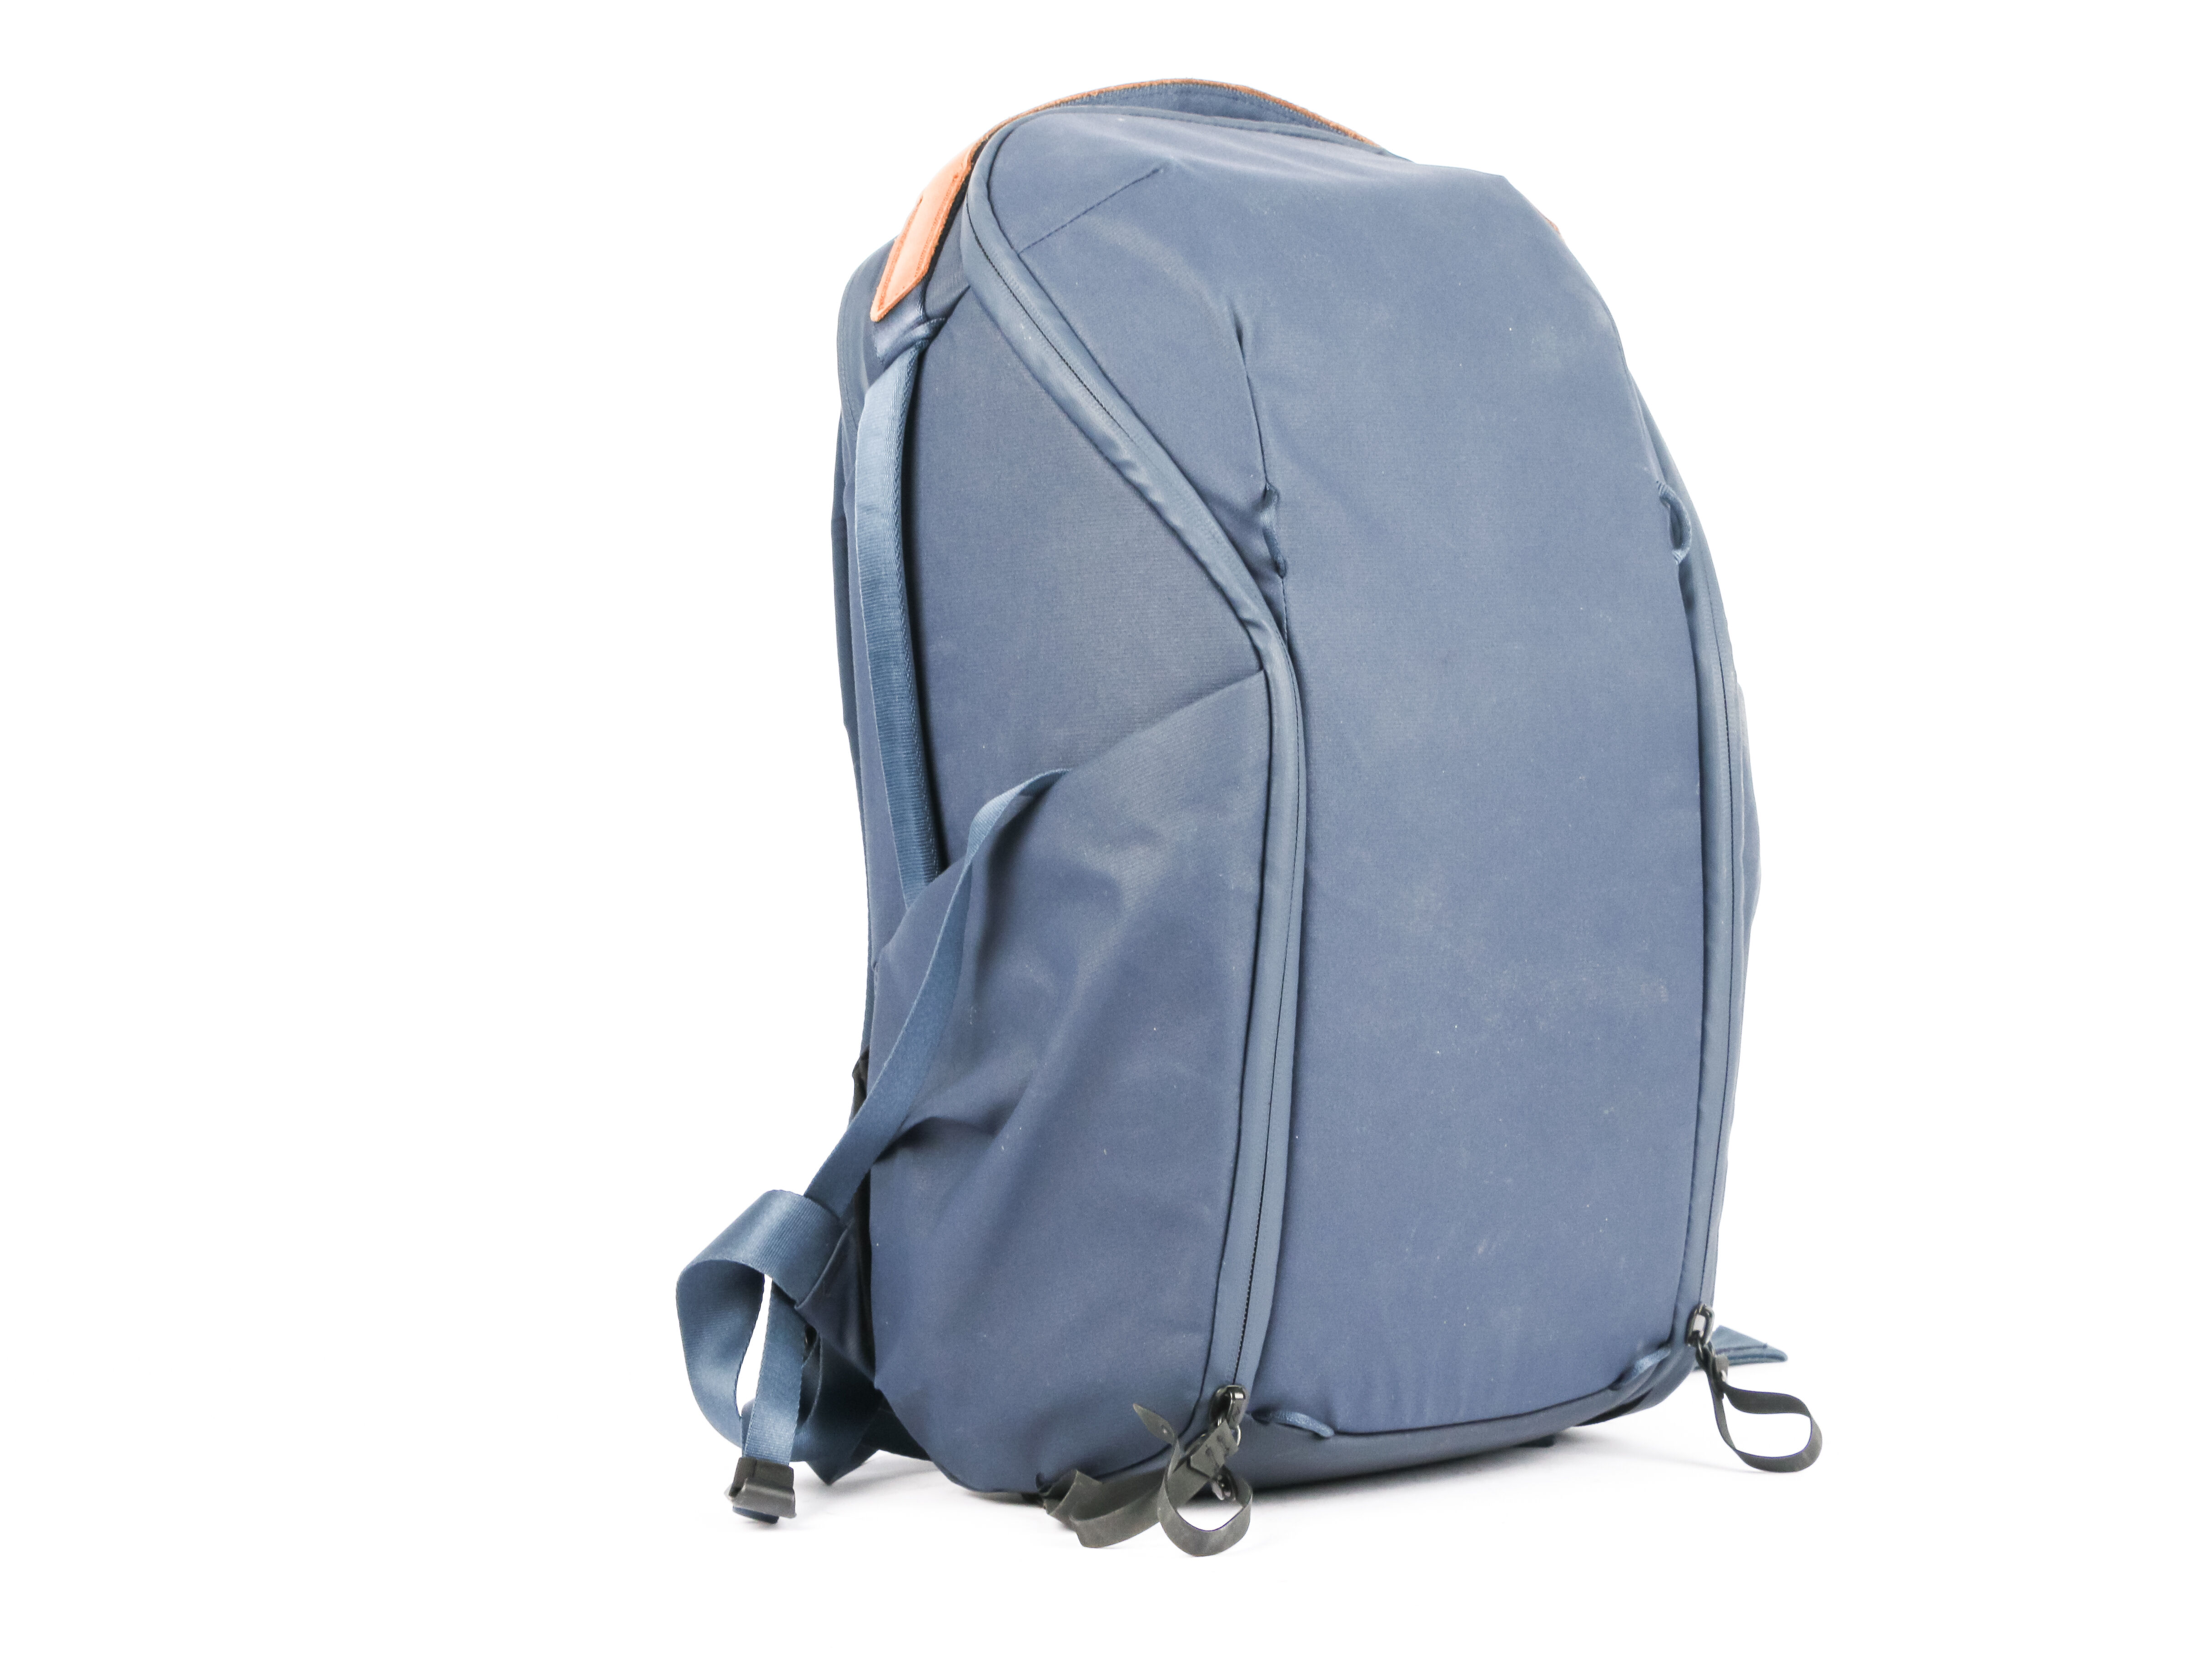 Used Peak Design Everyday Backpack 20L Zip